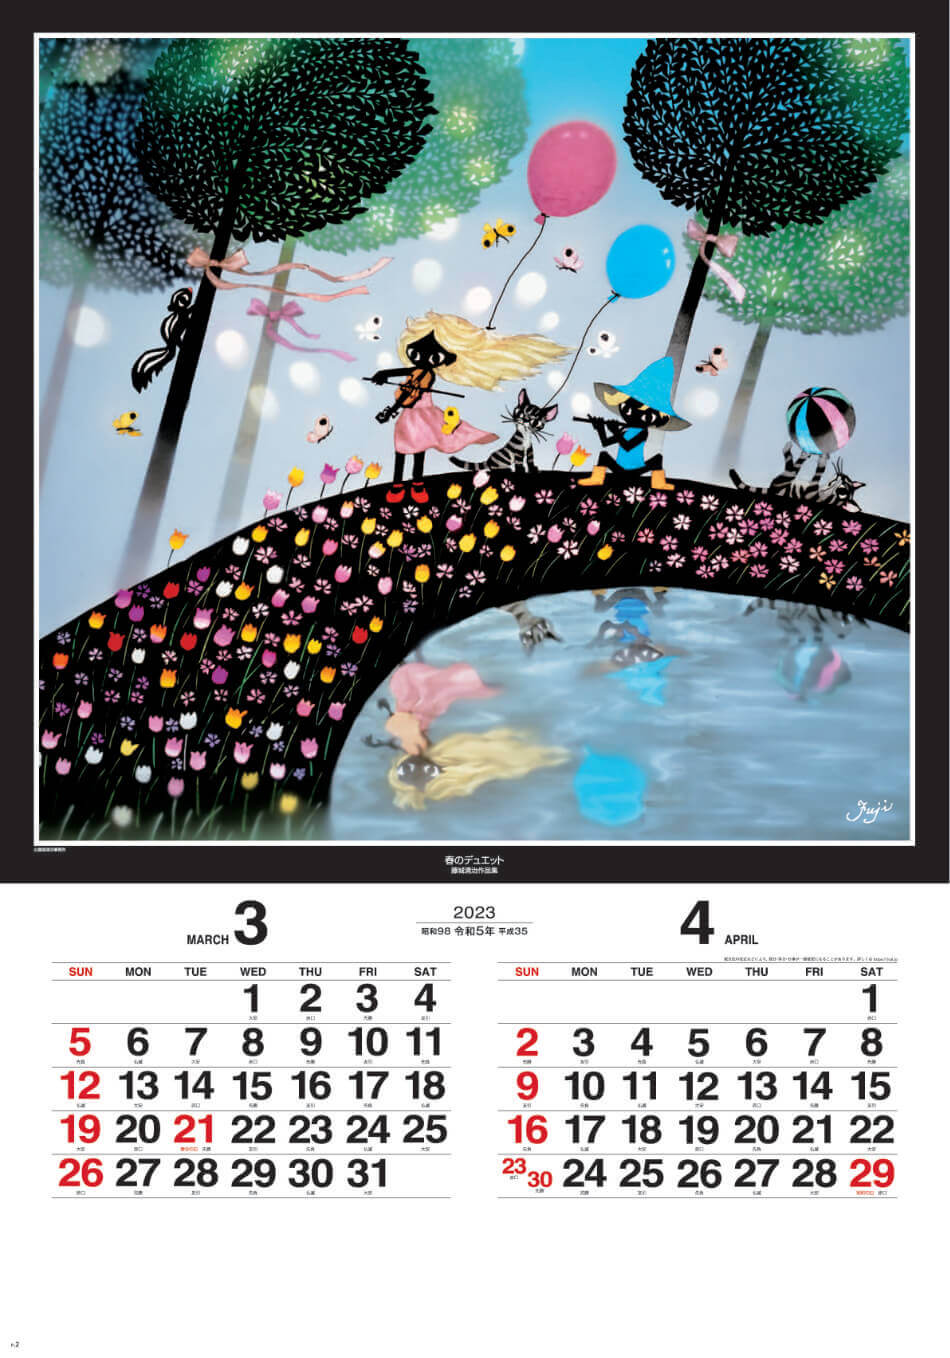 3/4月 春のデュエット 遠い日の風景から(影絵) 藤城清治 (フィルムカレンダー) 2023年カレンダーの画像